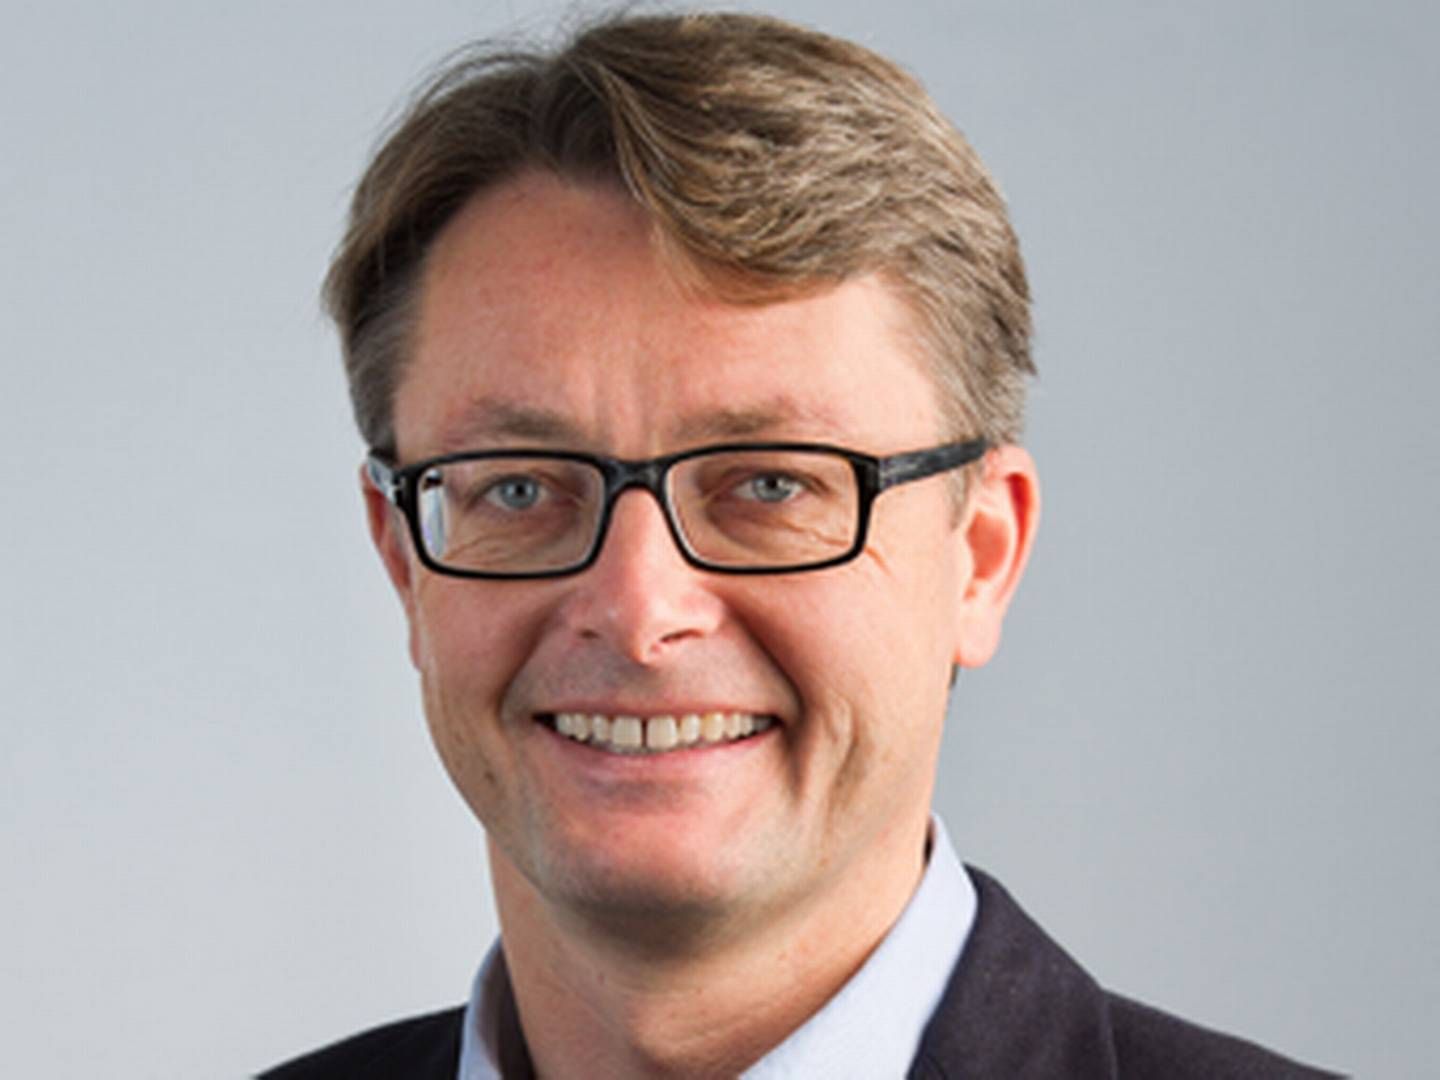 Øystein Eriksen, CEO Aker Solutions.